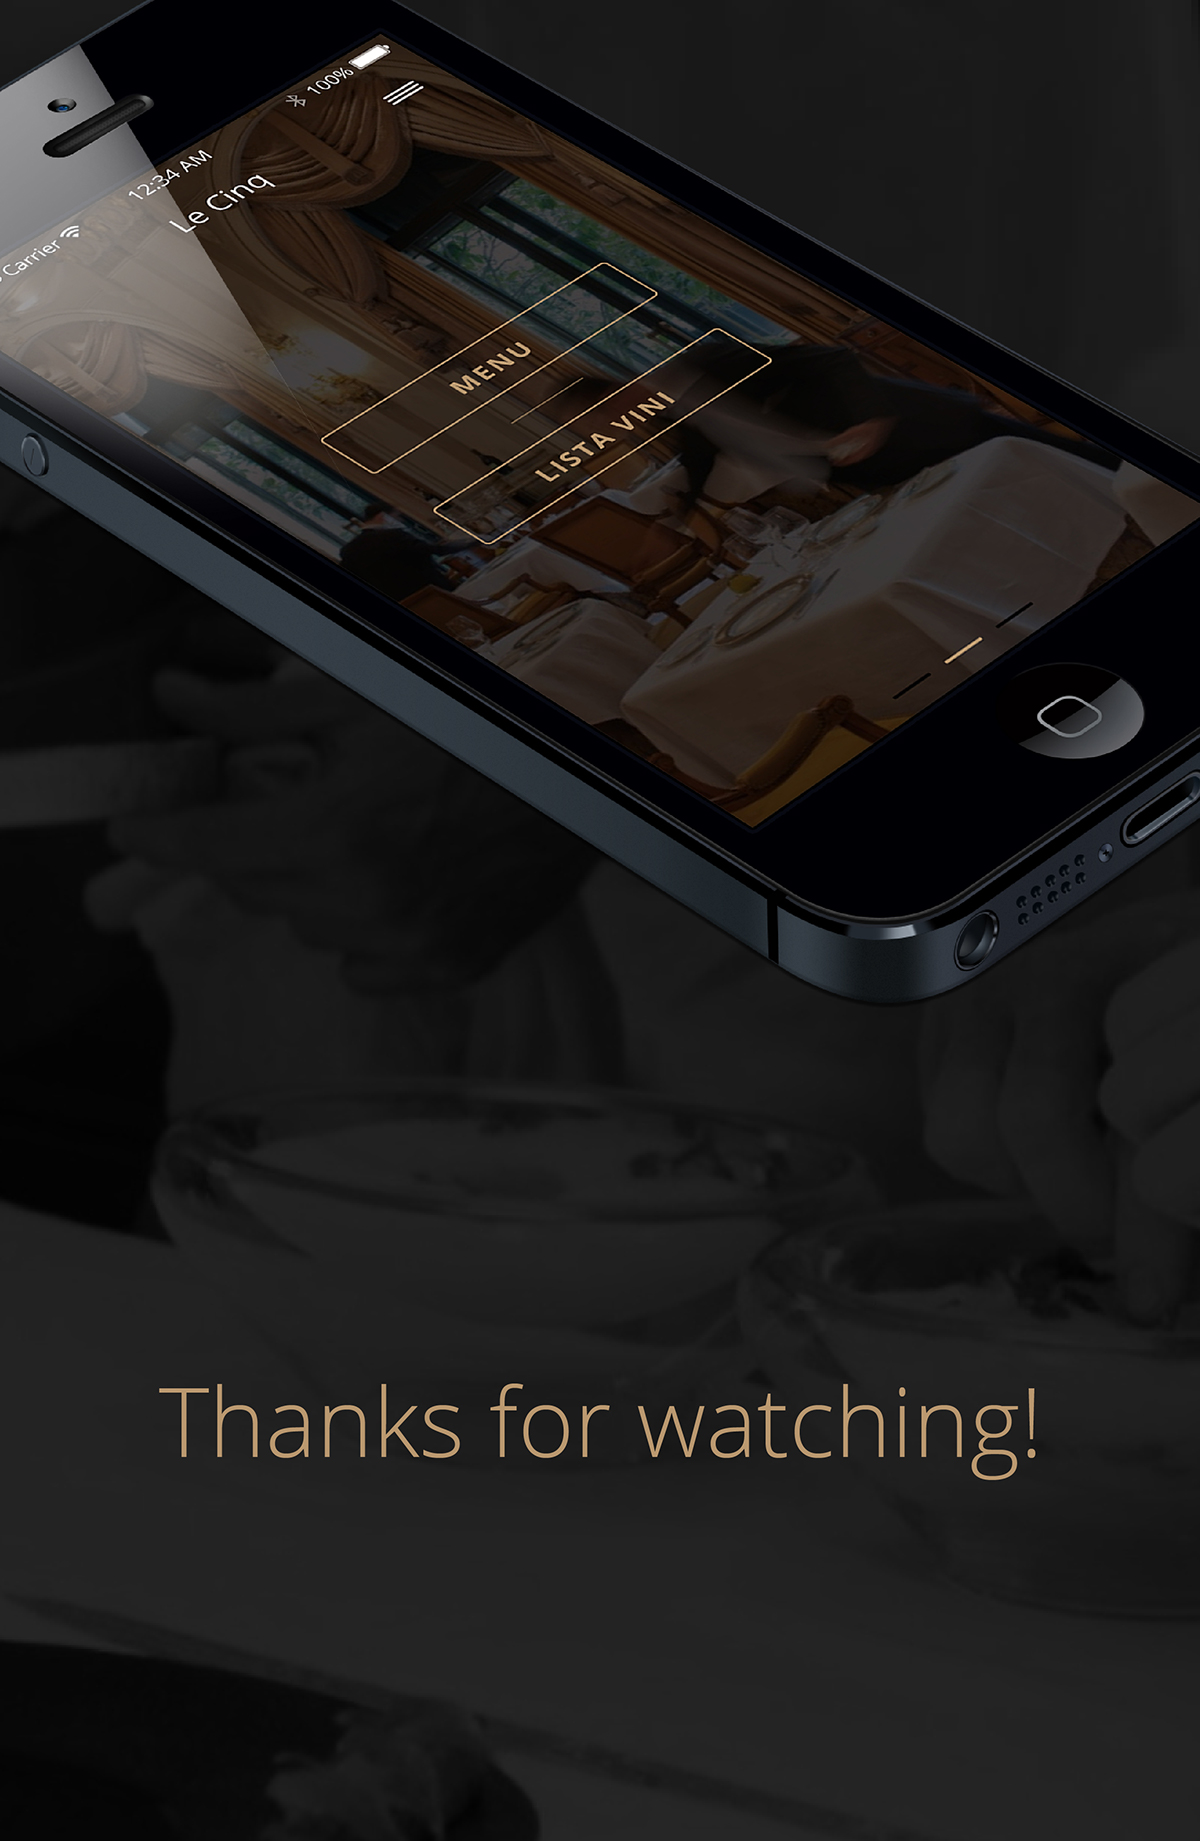 le cinq restaurant app concept Paris ios iphone iphone 6 luxury app design